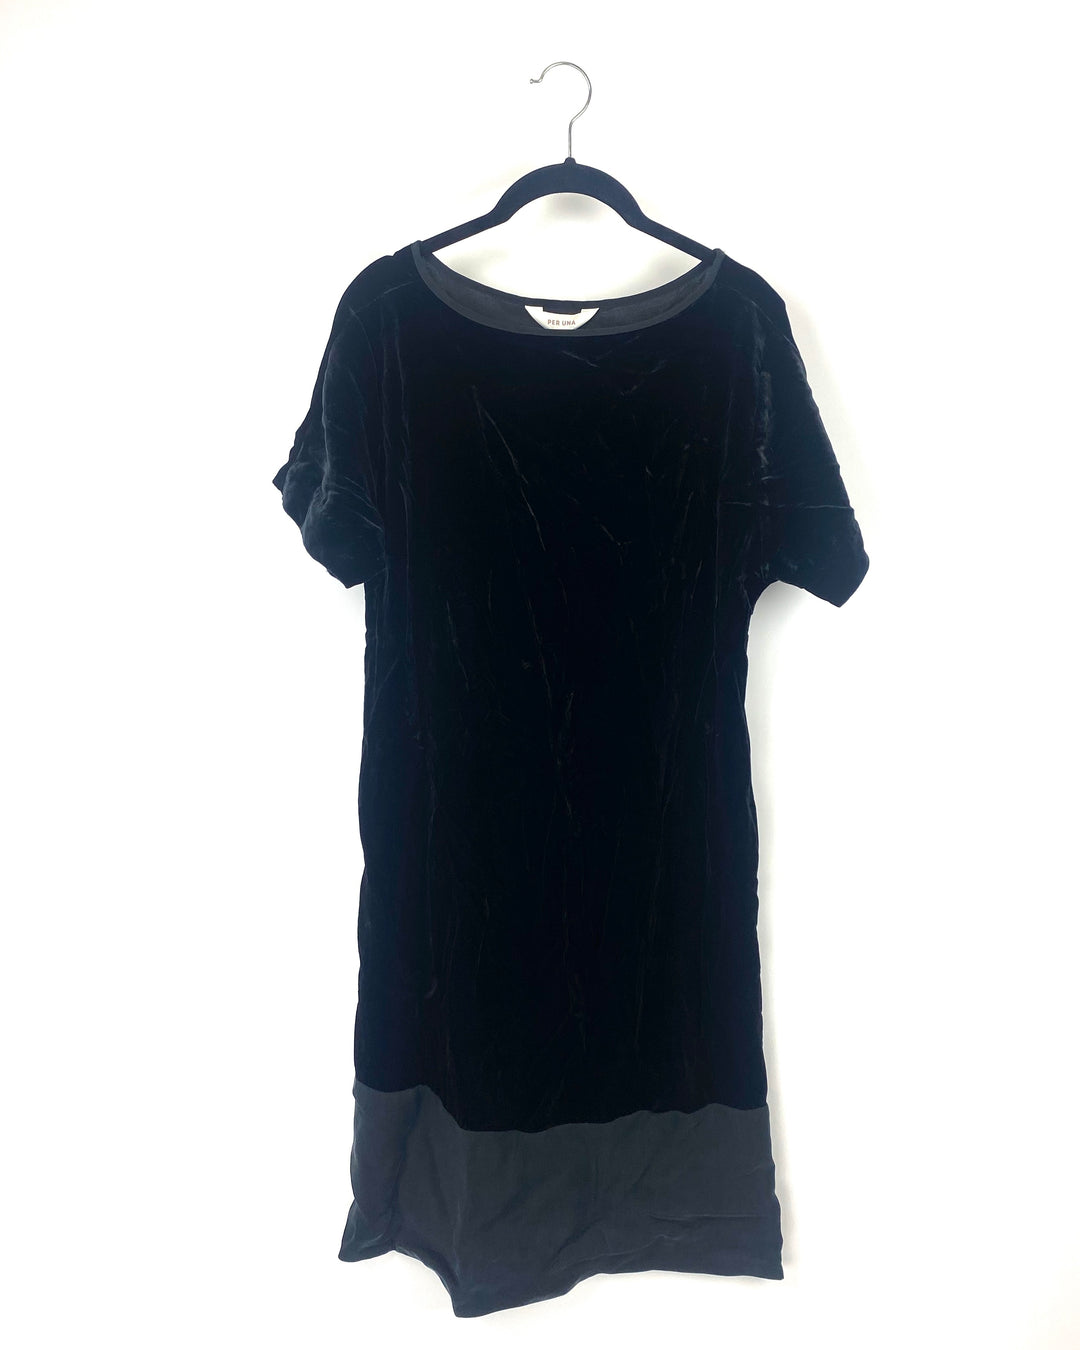 Black Velvet Dress - Size 6